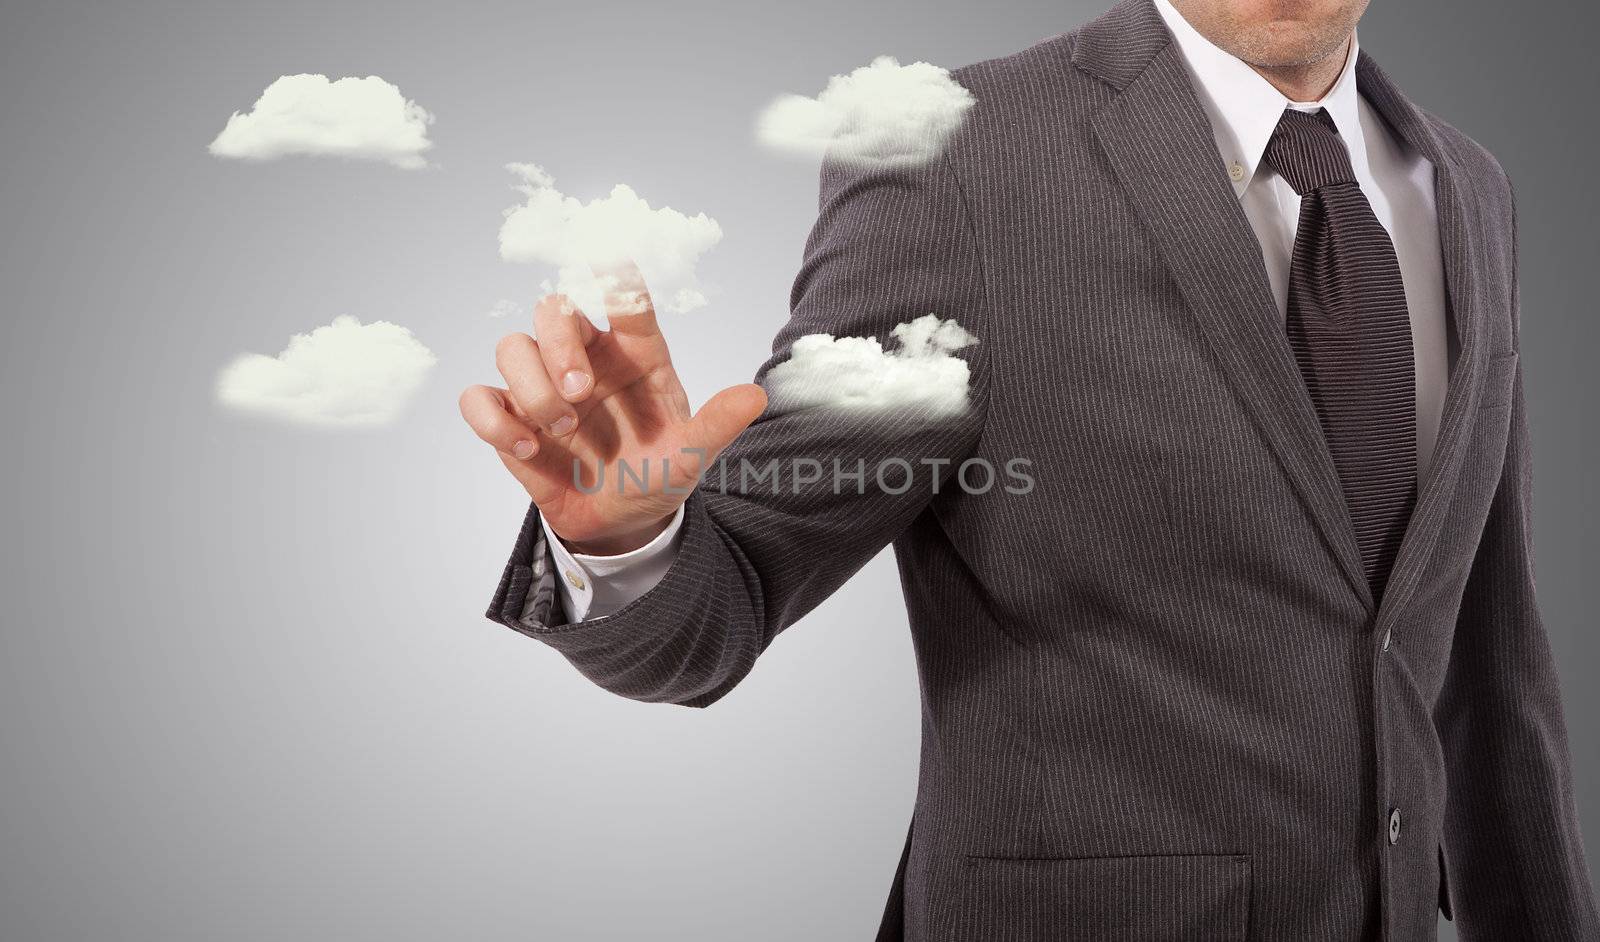 cloud server concept by matteobragaglio